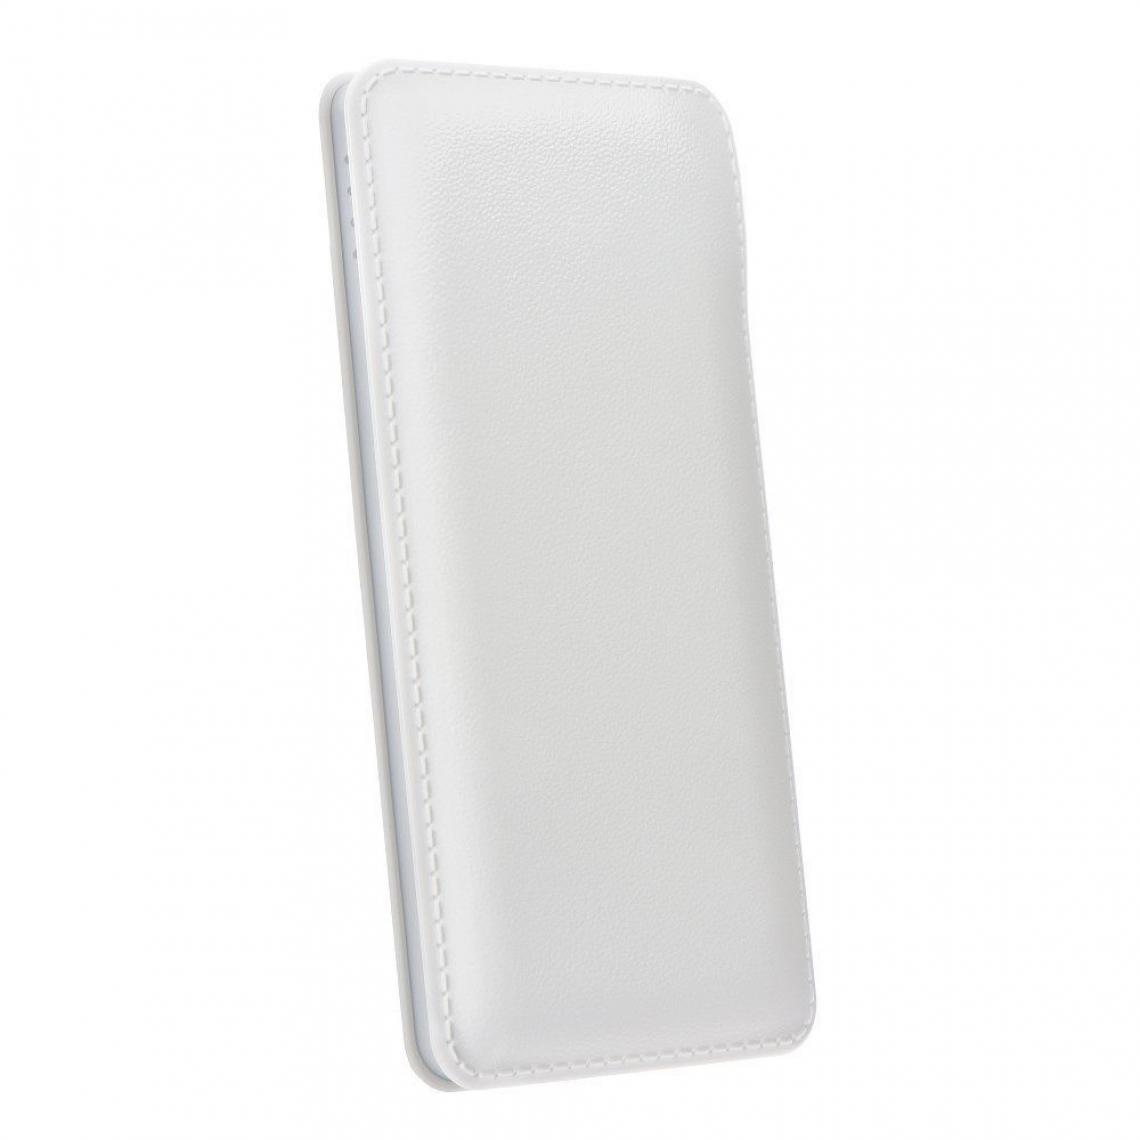 Ozzzo - Chargeur batterie externe 30000 mAh powerbank ozzzo blanc pour Samsung Galaxy M10 - Autres accessoires smartphone